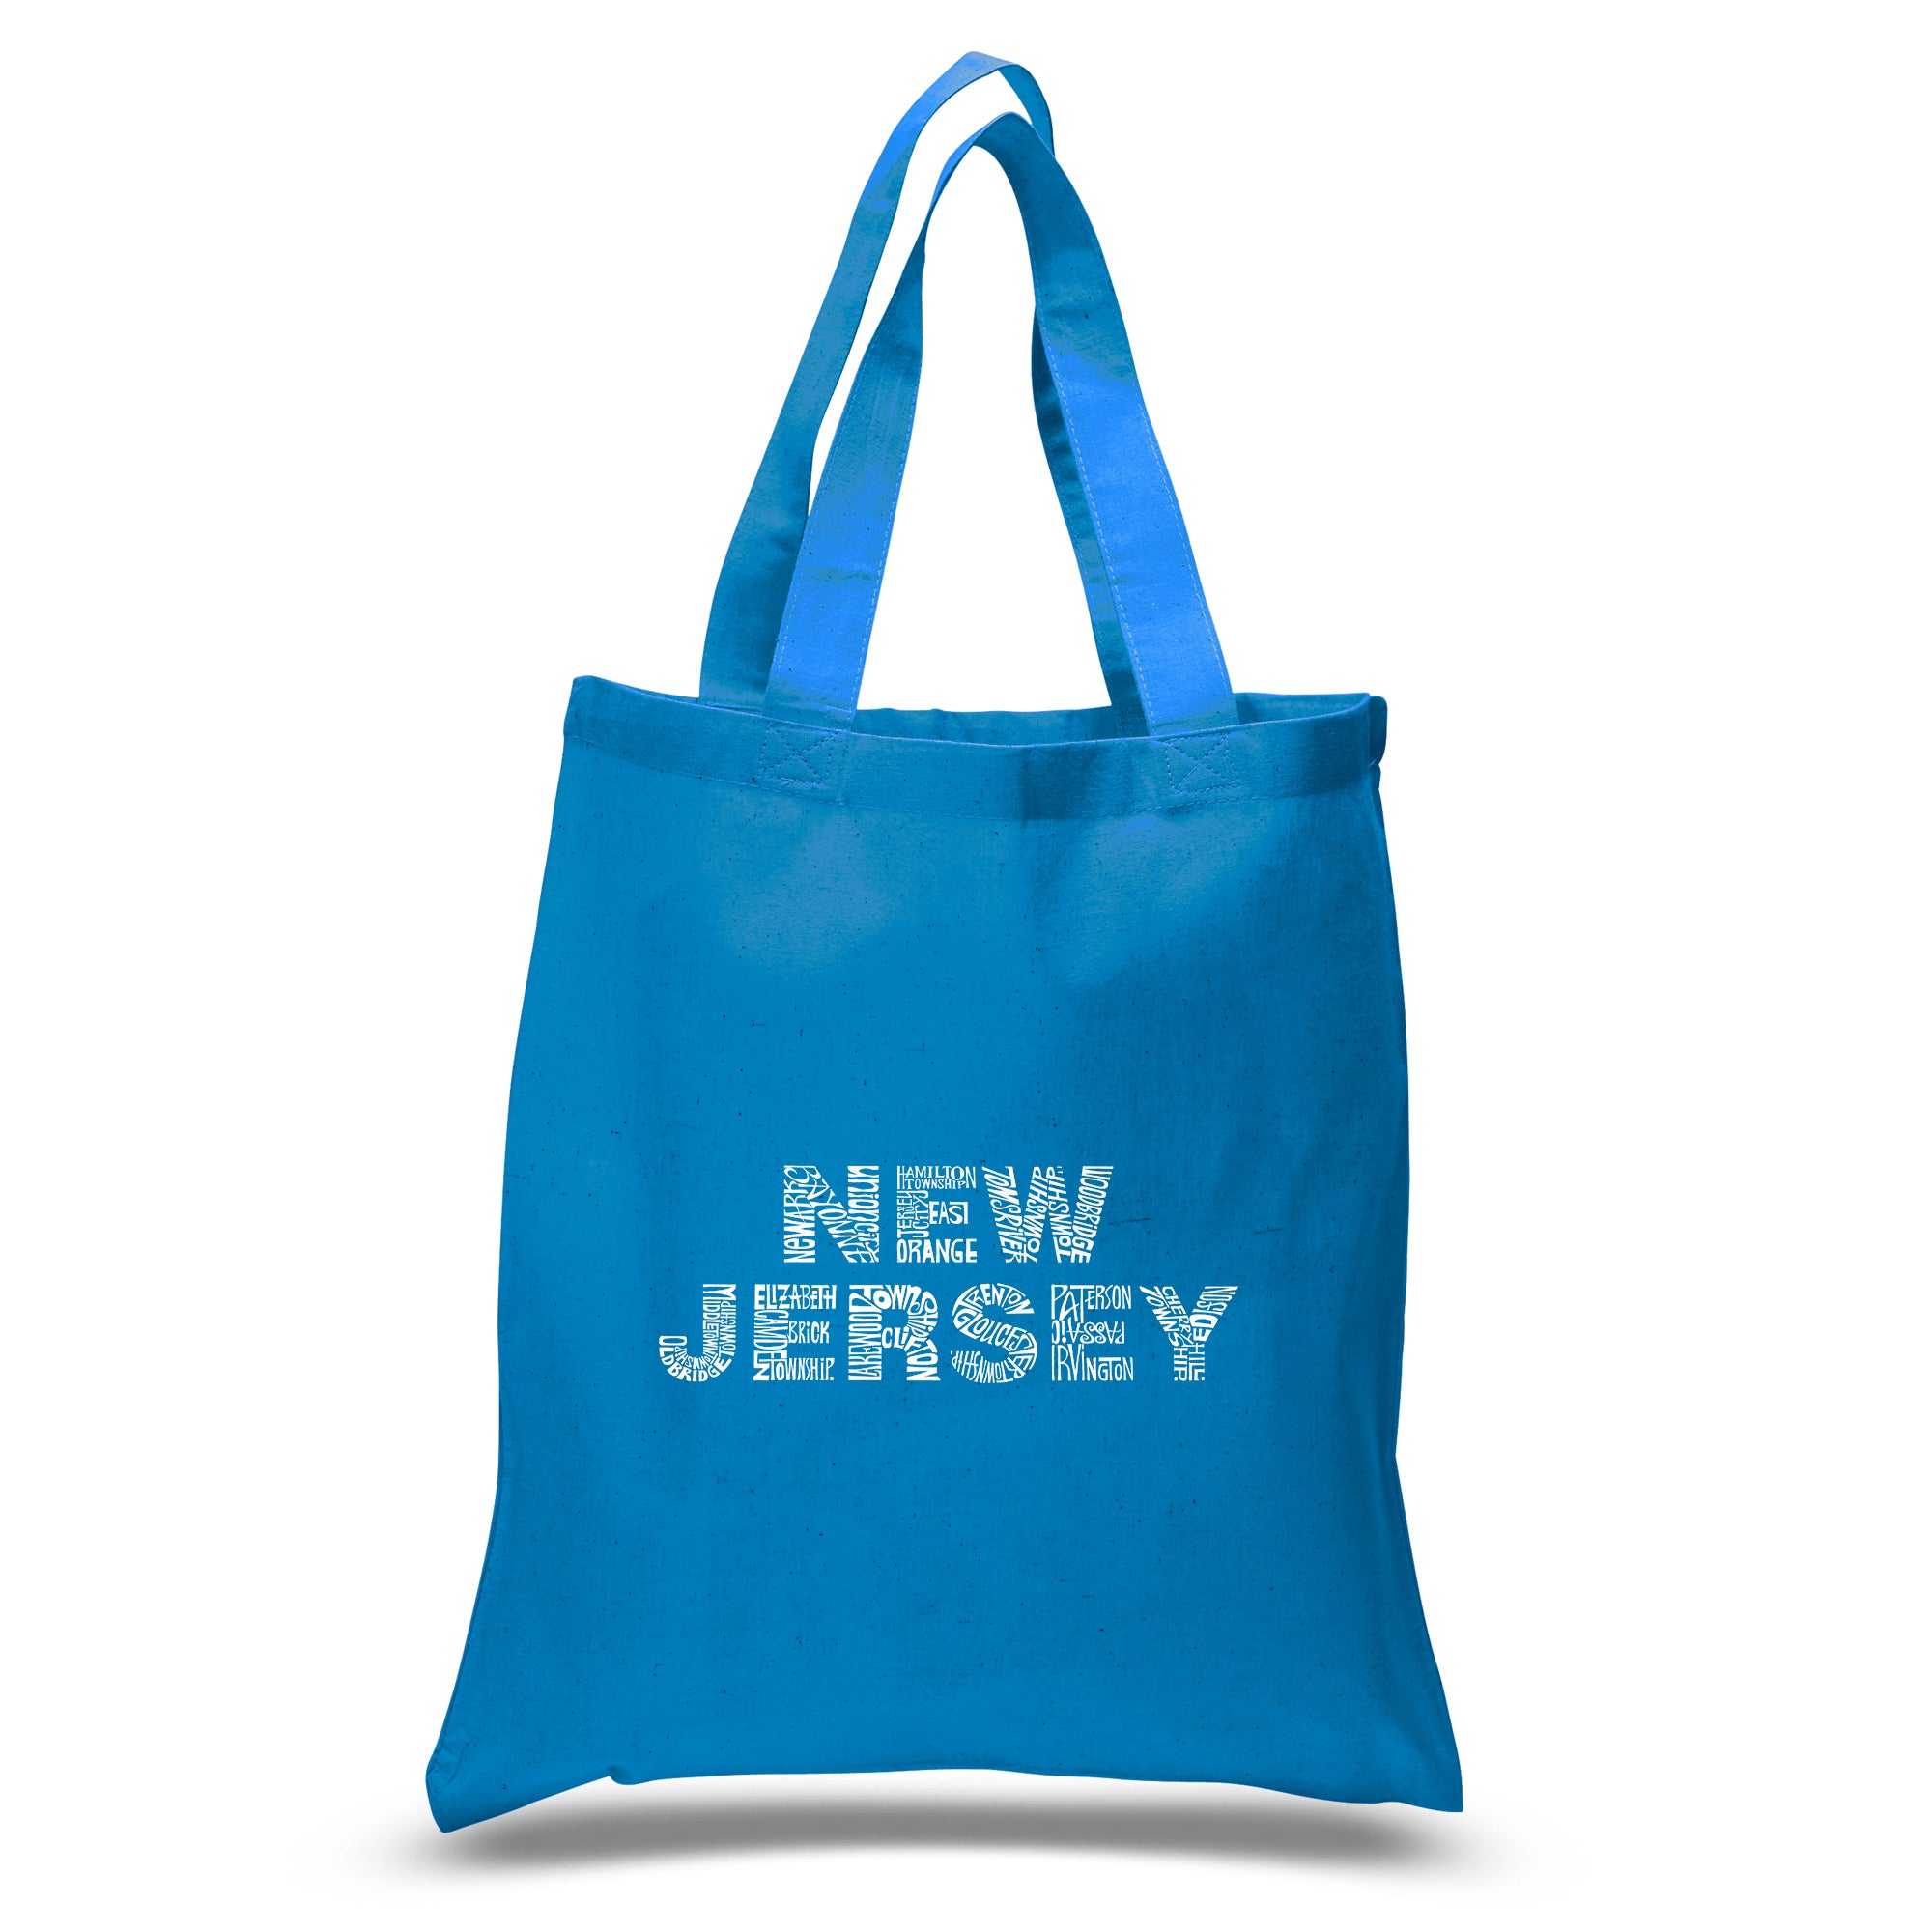 NEW JERSEY NEIGHBORHOODS - Large Word Art Tote Bag – LA Pop Art